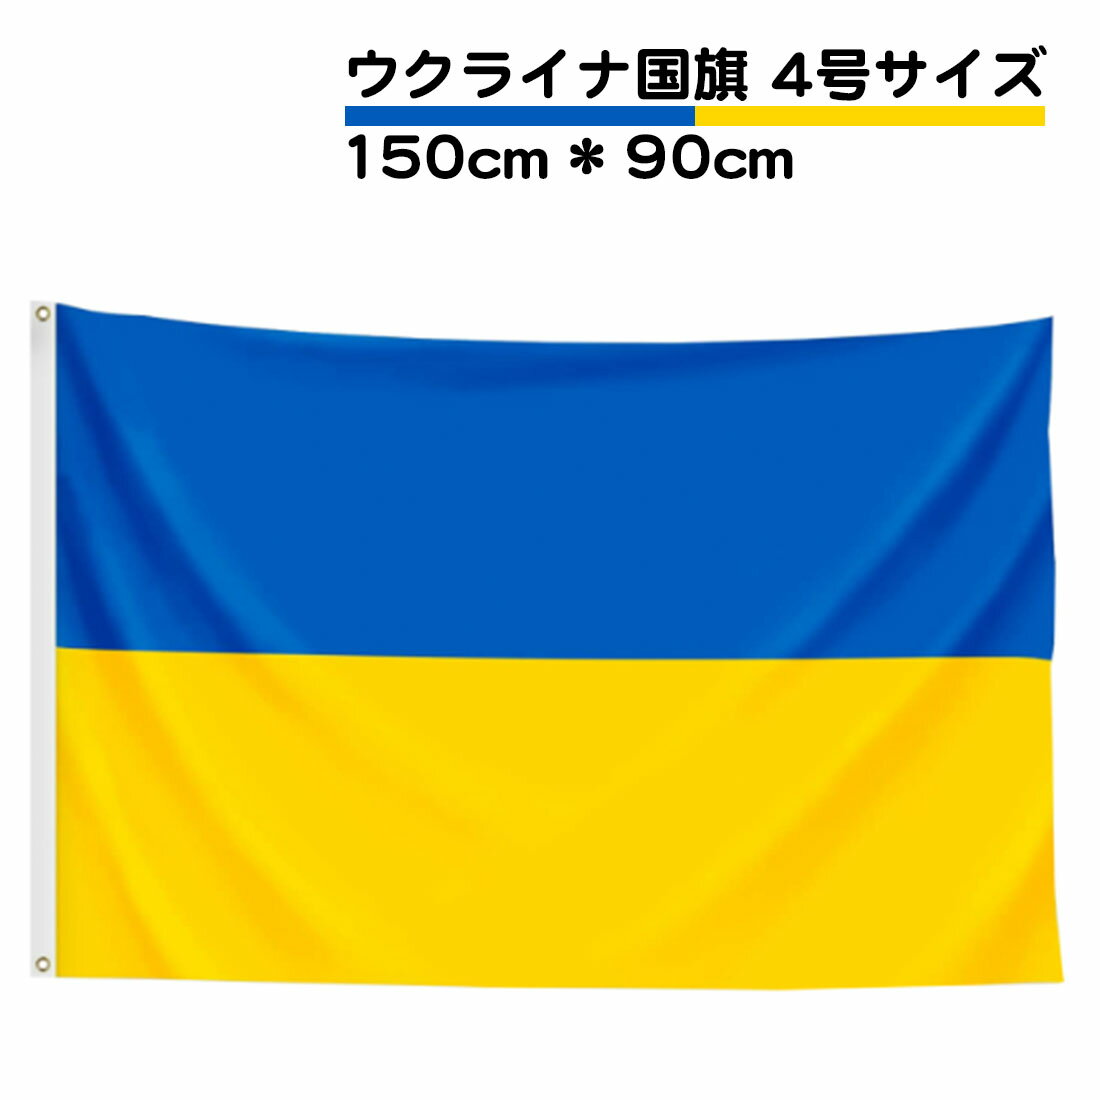 TOSPA コスタリカ 国旗 紋章入り 200×300cm テトロン製 日本製 世界の国旗シリーズ